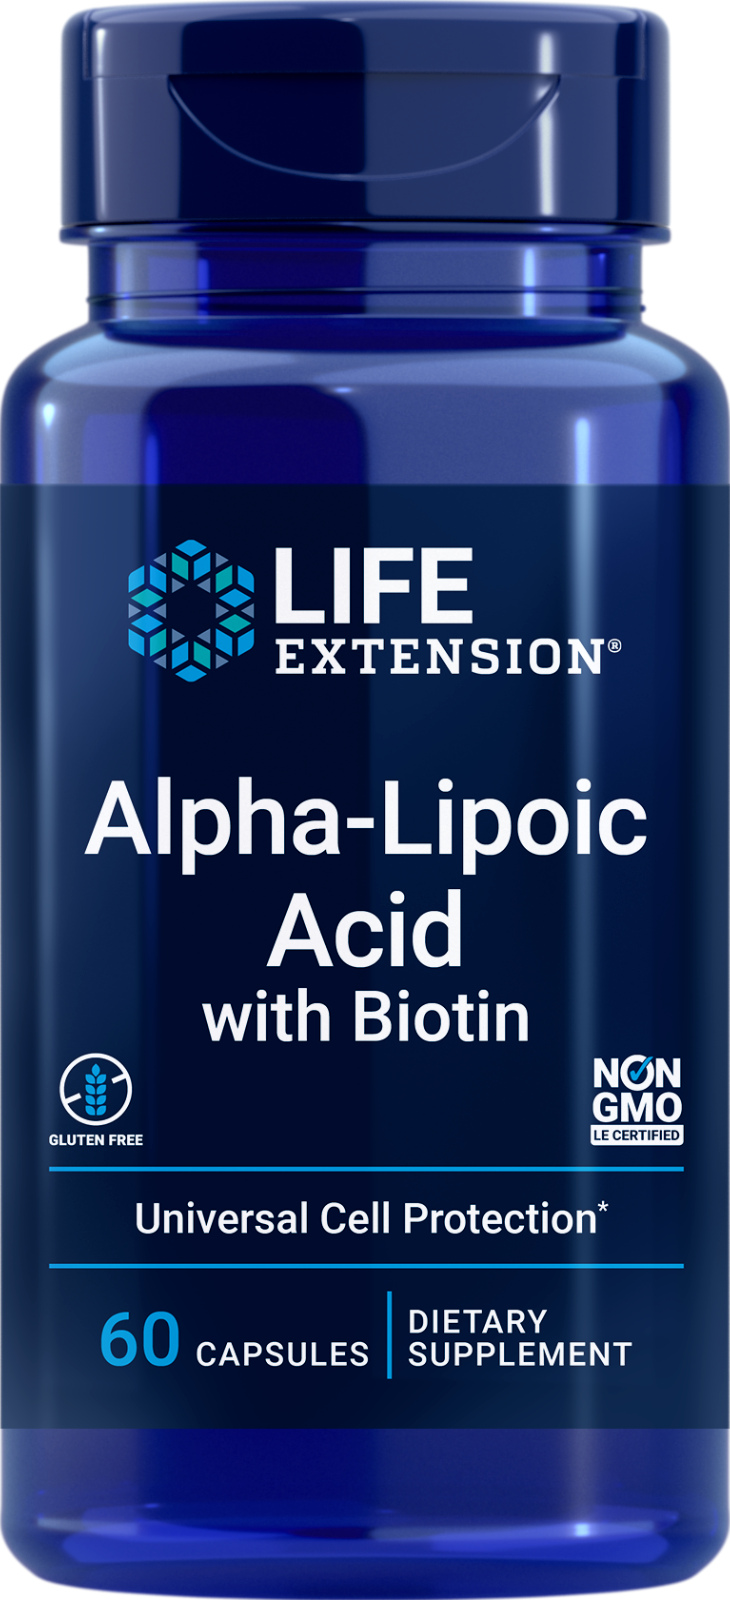 Alpha Lipoic Acid With Biotin 60 Caps Life Extension Non GMO/Gluten Free - $17.89